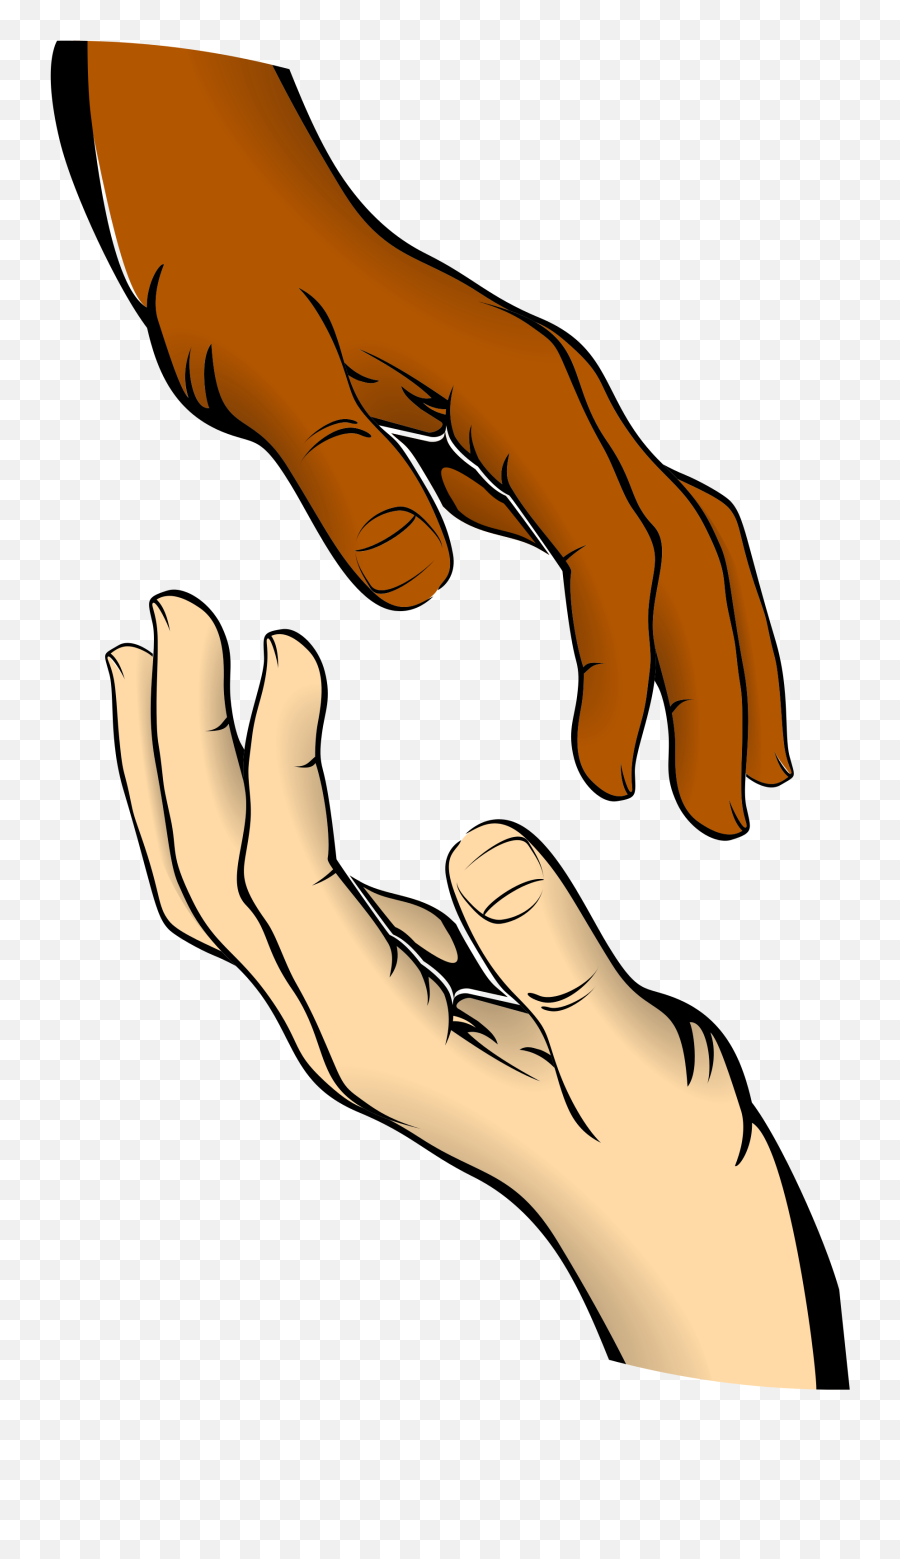 Finger Clipart Blessing Hand Finger Blessing Hand - Hands Clip Art Emoji,Praise Hands Emoji